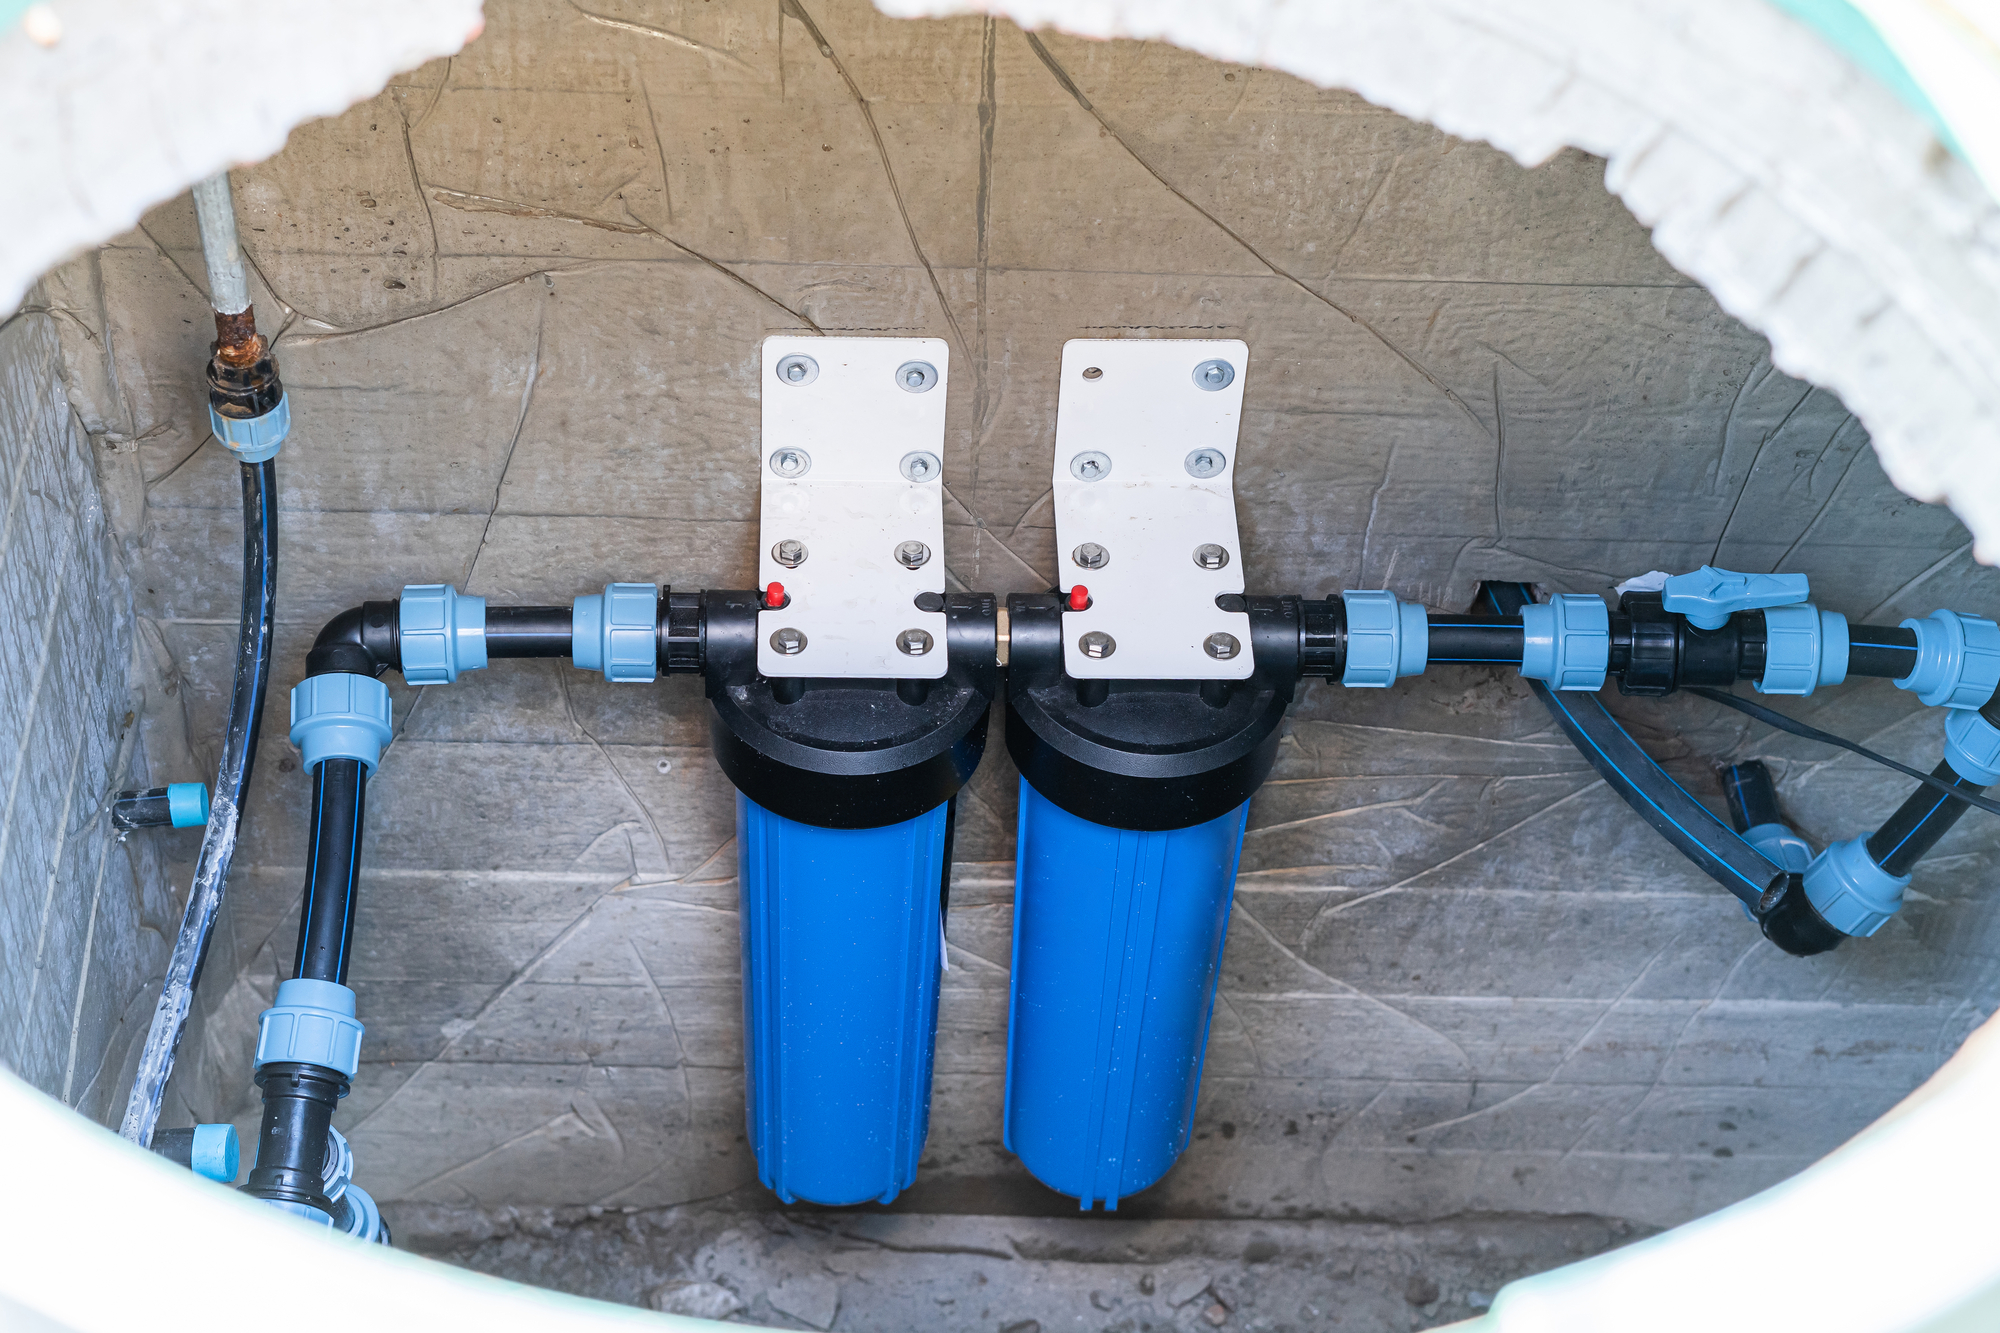 Underground water filtration